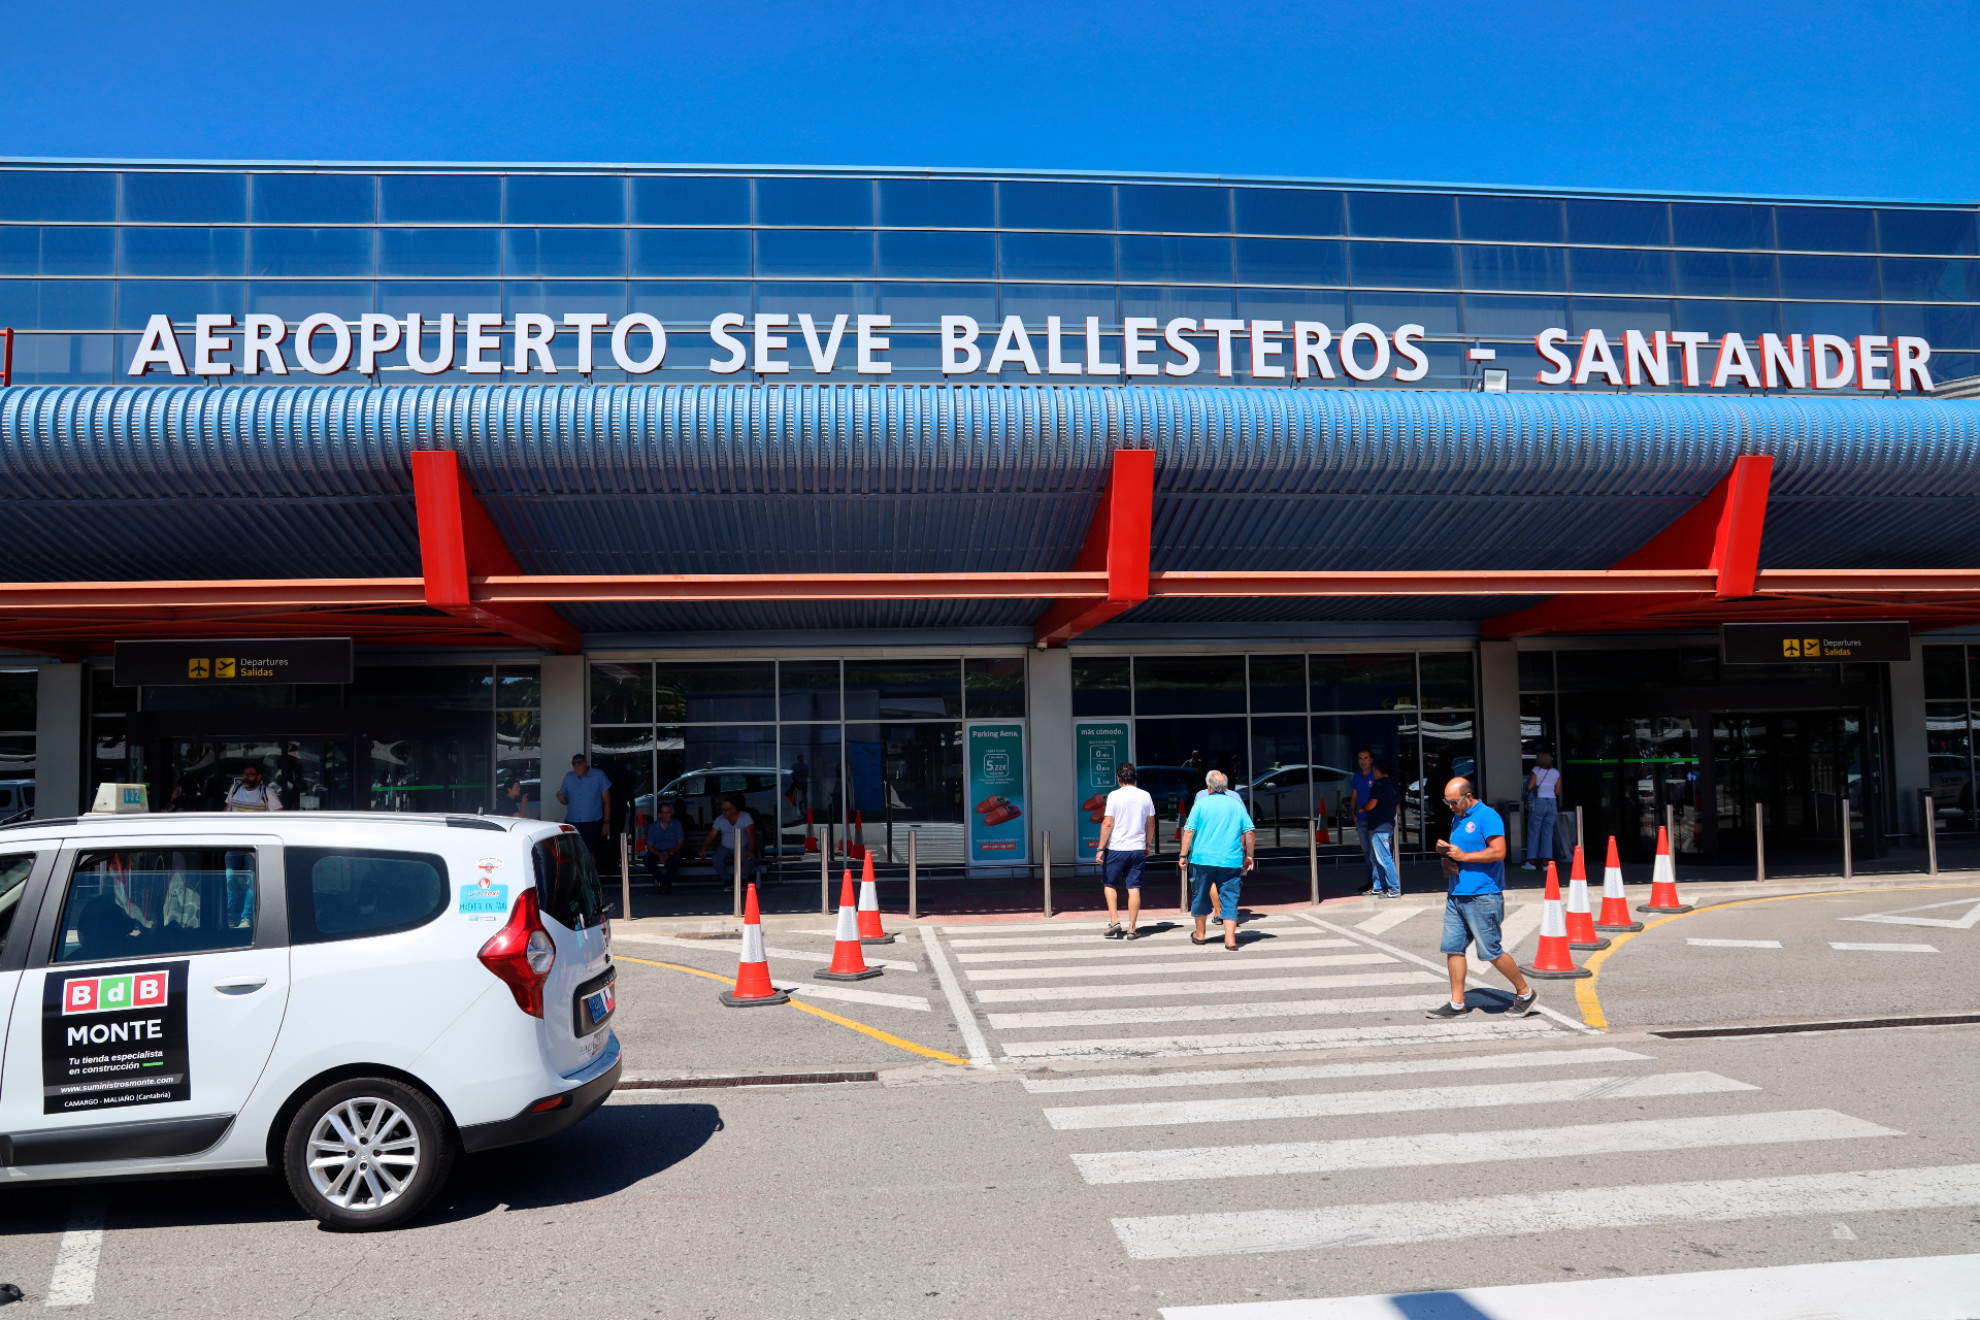 Aeropuerto de Santander llamado Severiano Ballesteros